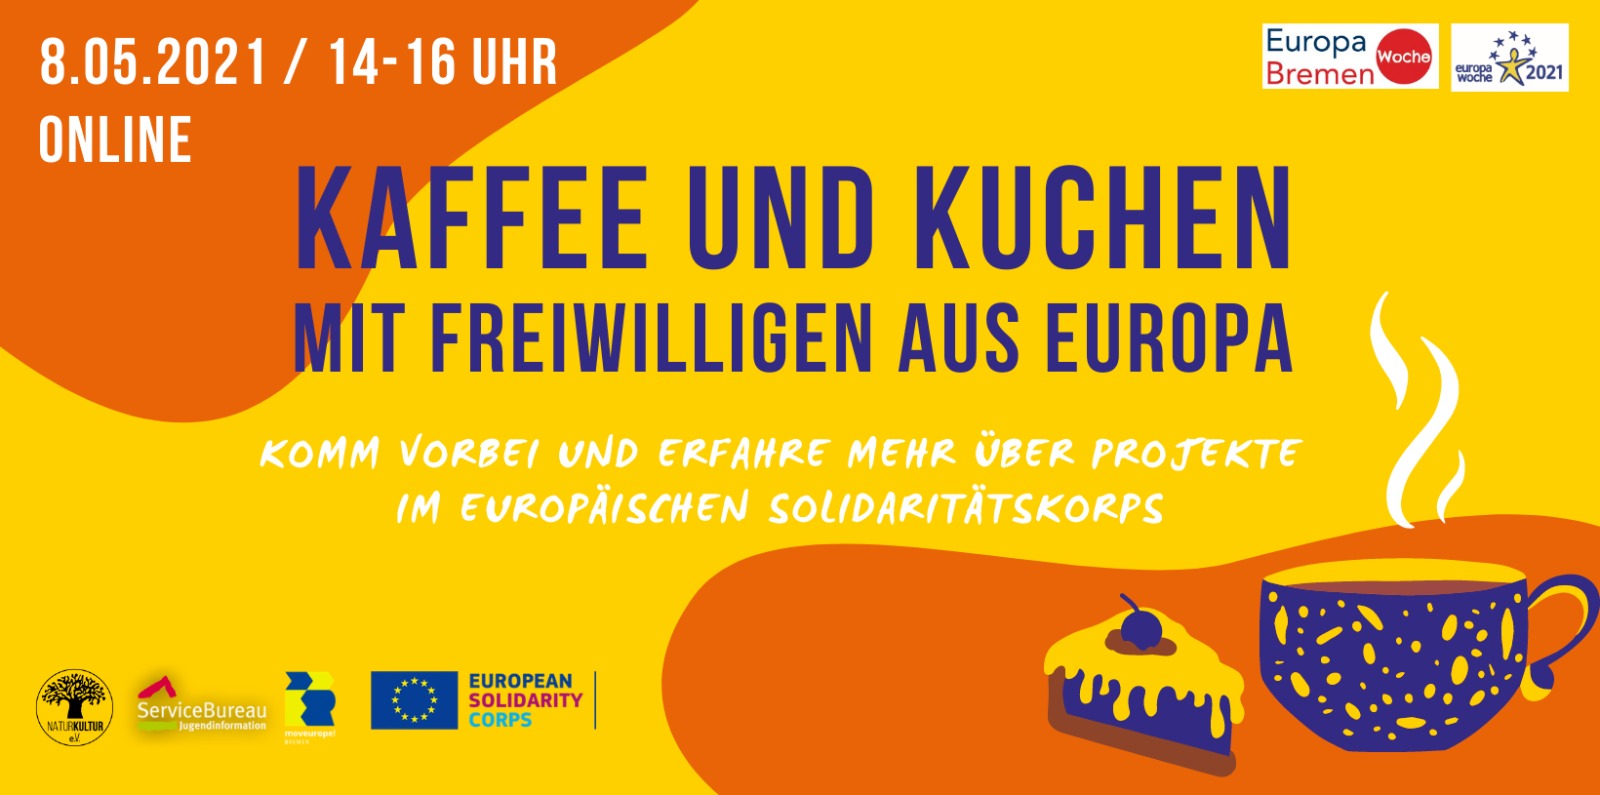 Kaffee und Kuchen mit Freiwilligen aus Europa